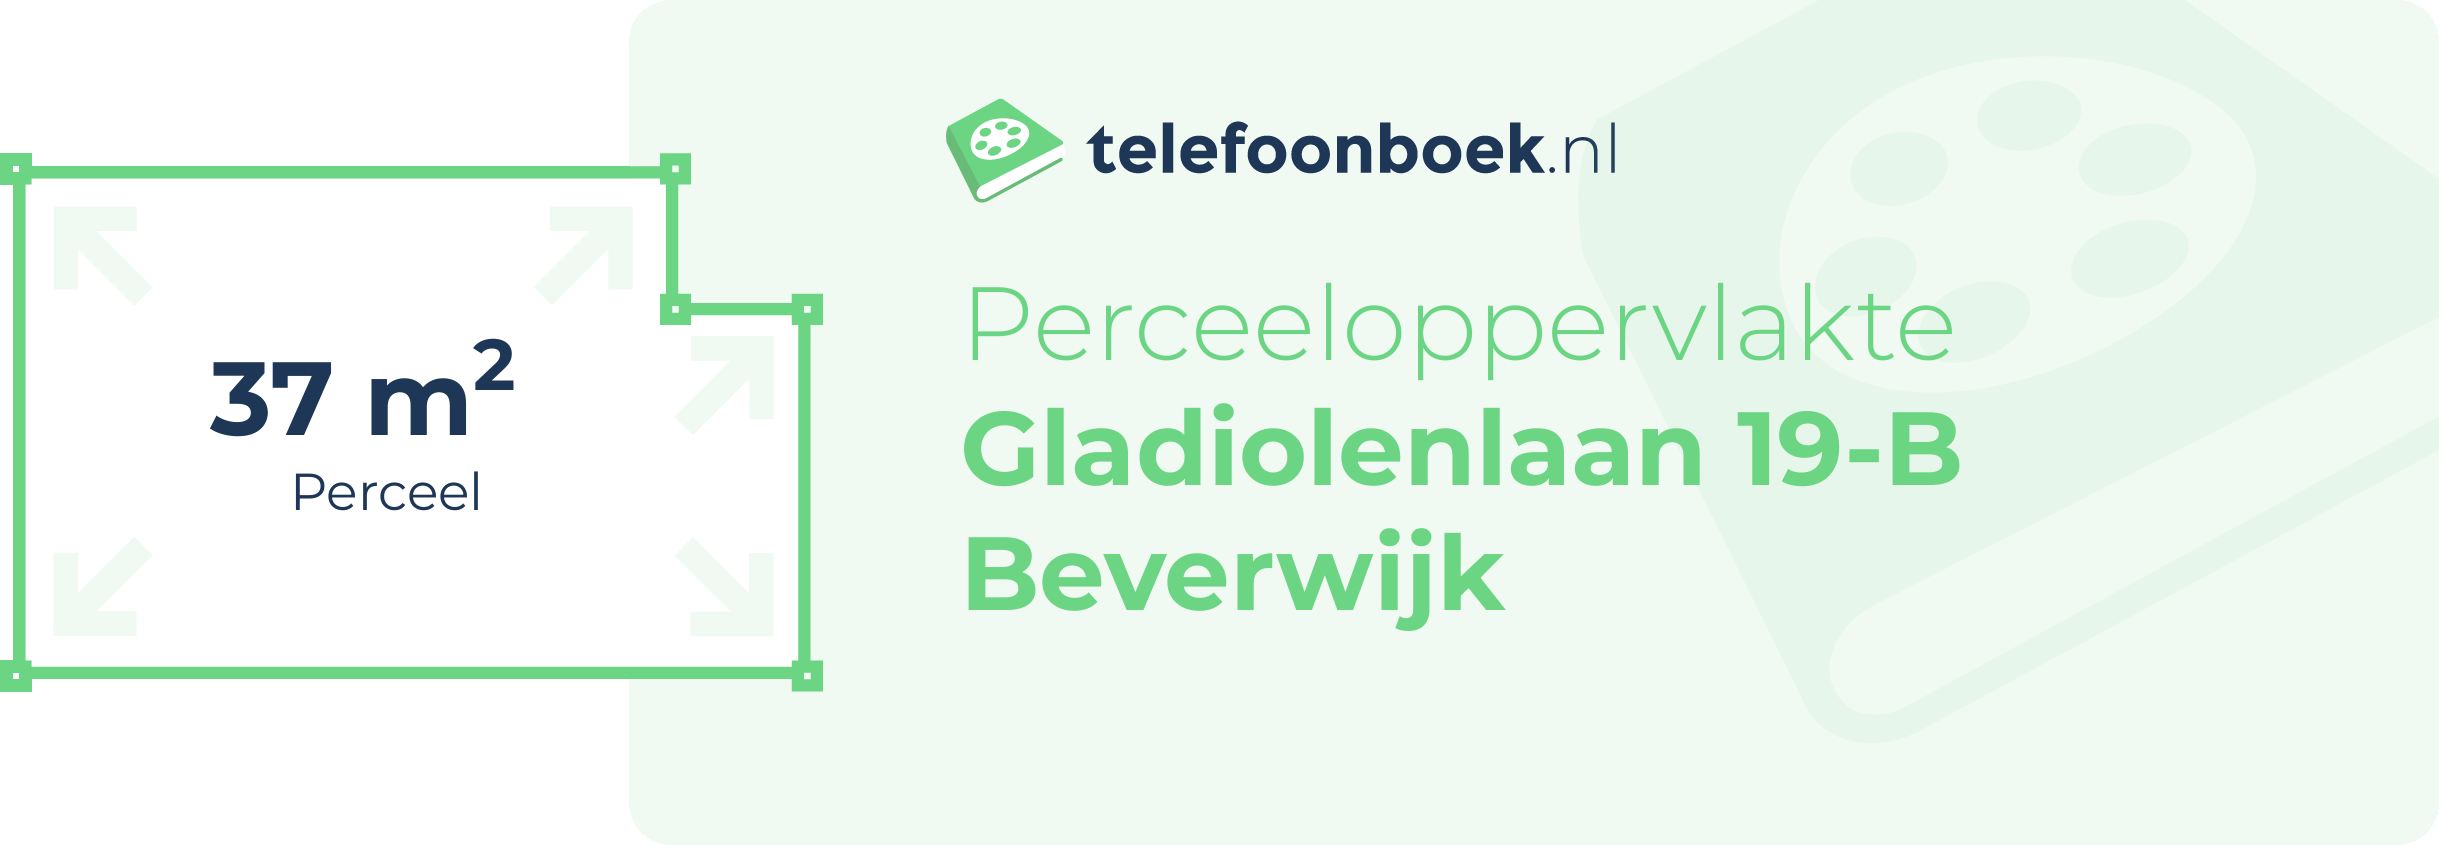 Perceeloppervlakte Gladiolenlaan 19-B Beverwijk